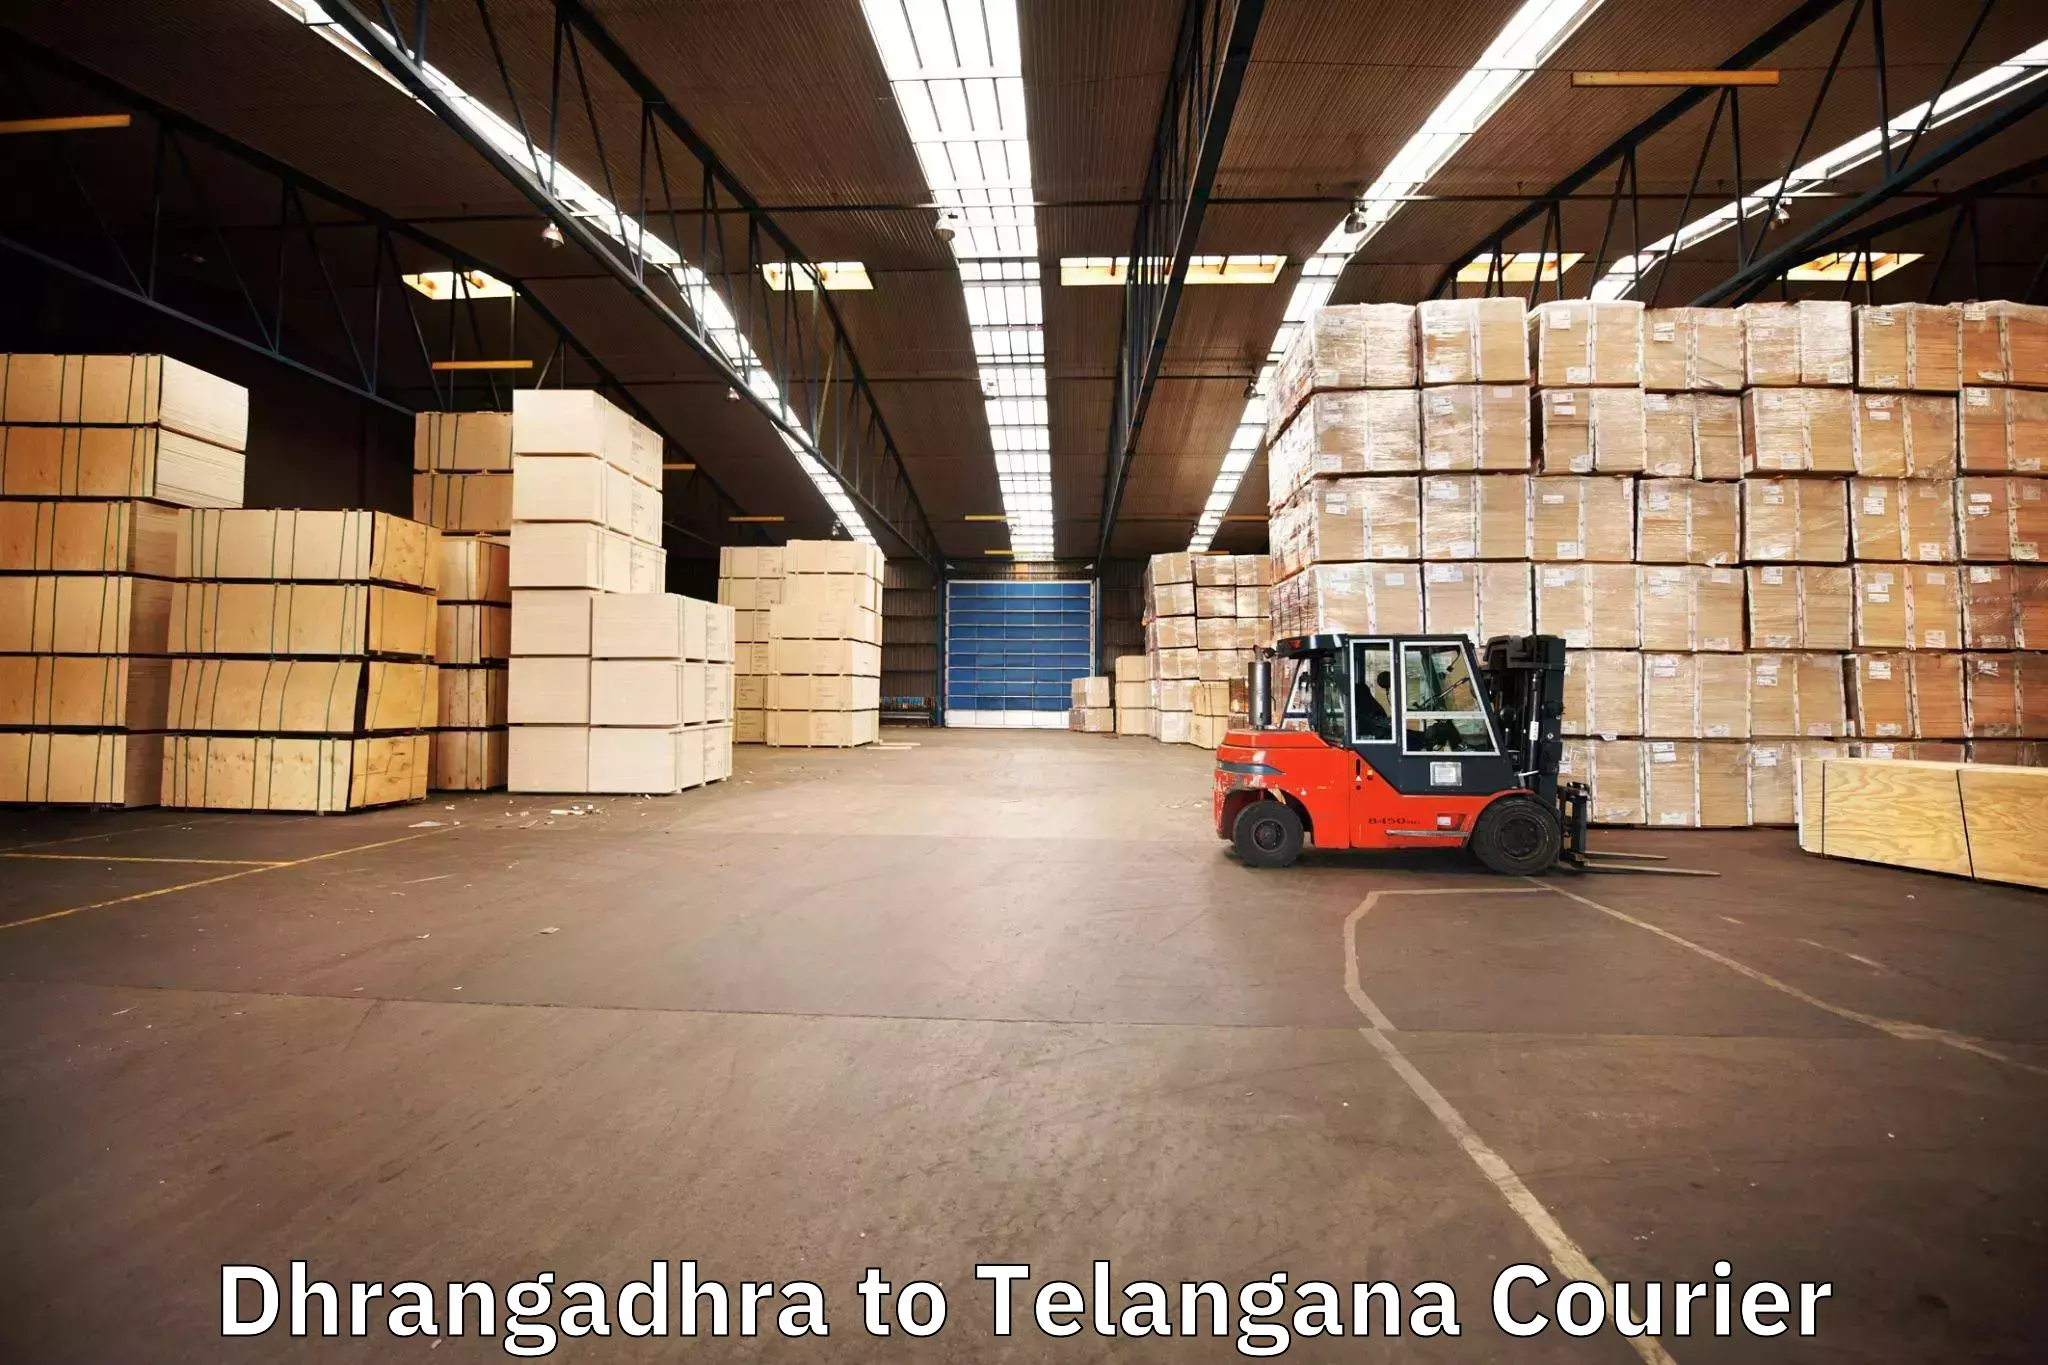 Furniture relocation experts Dhrangadhra to Rayaparthi